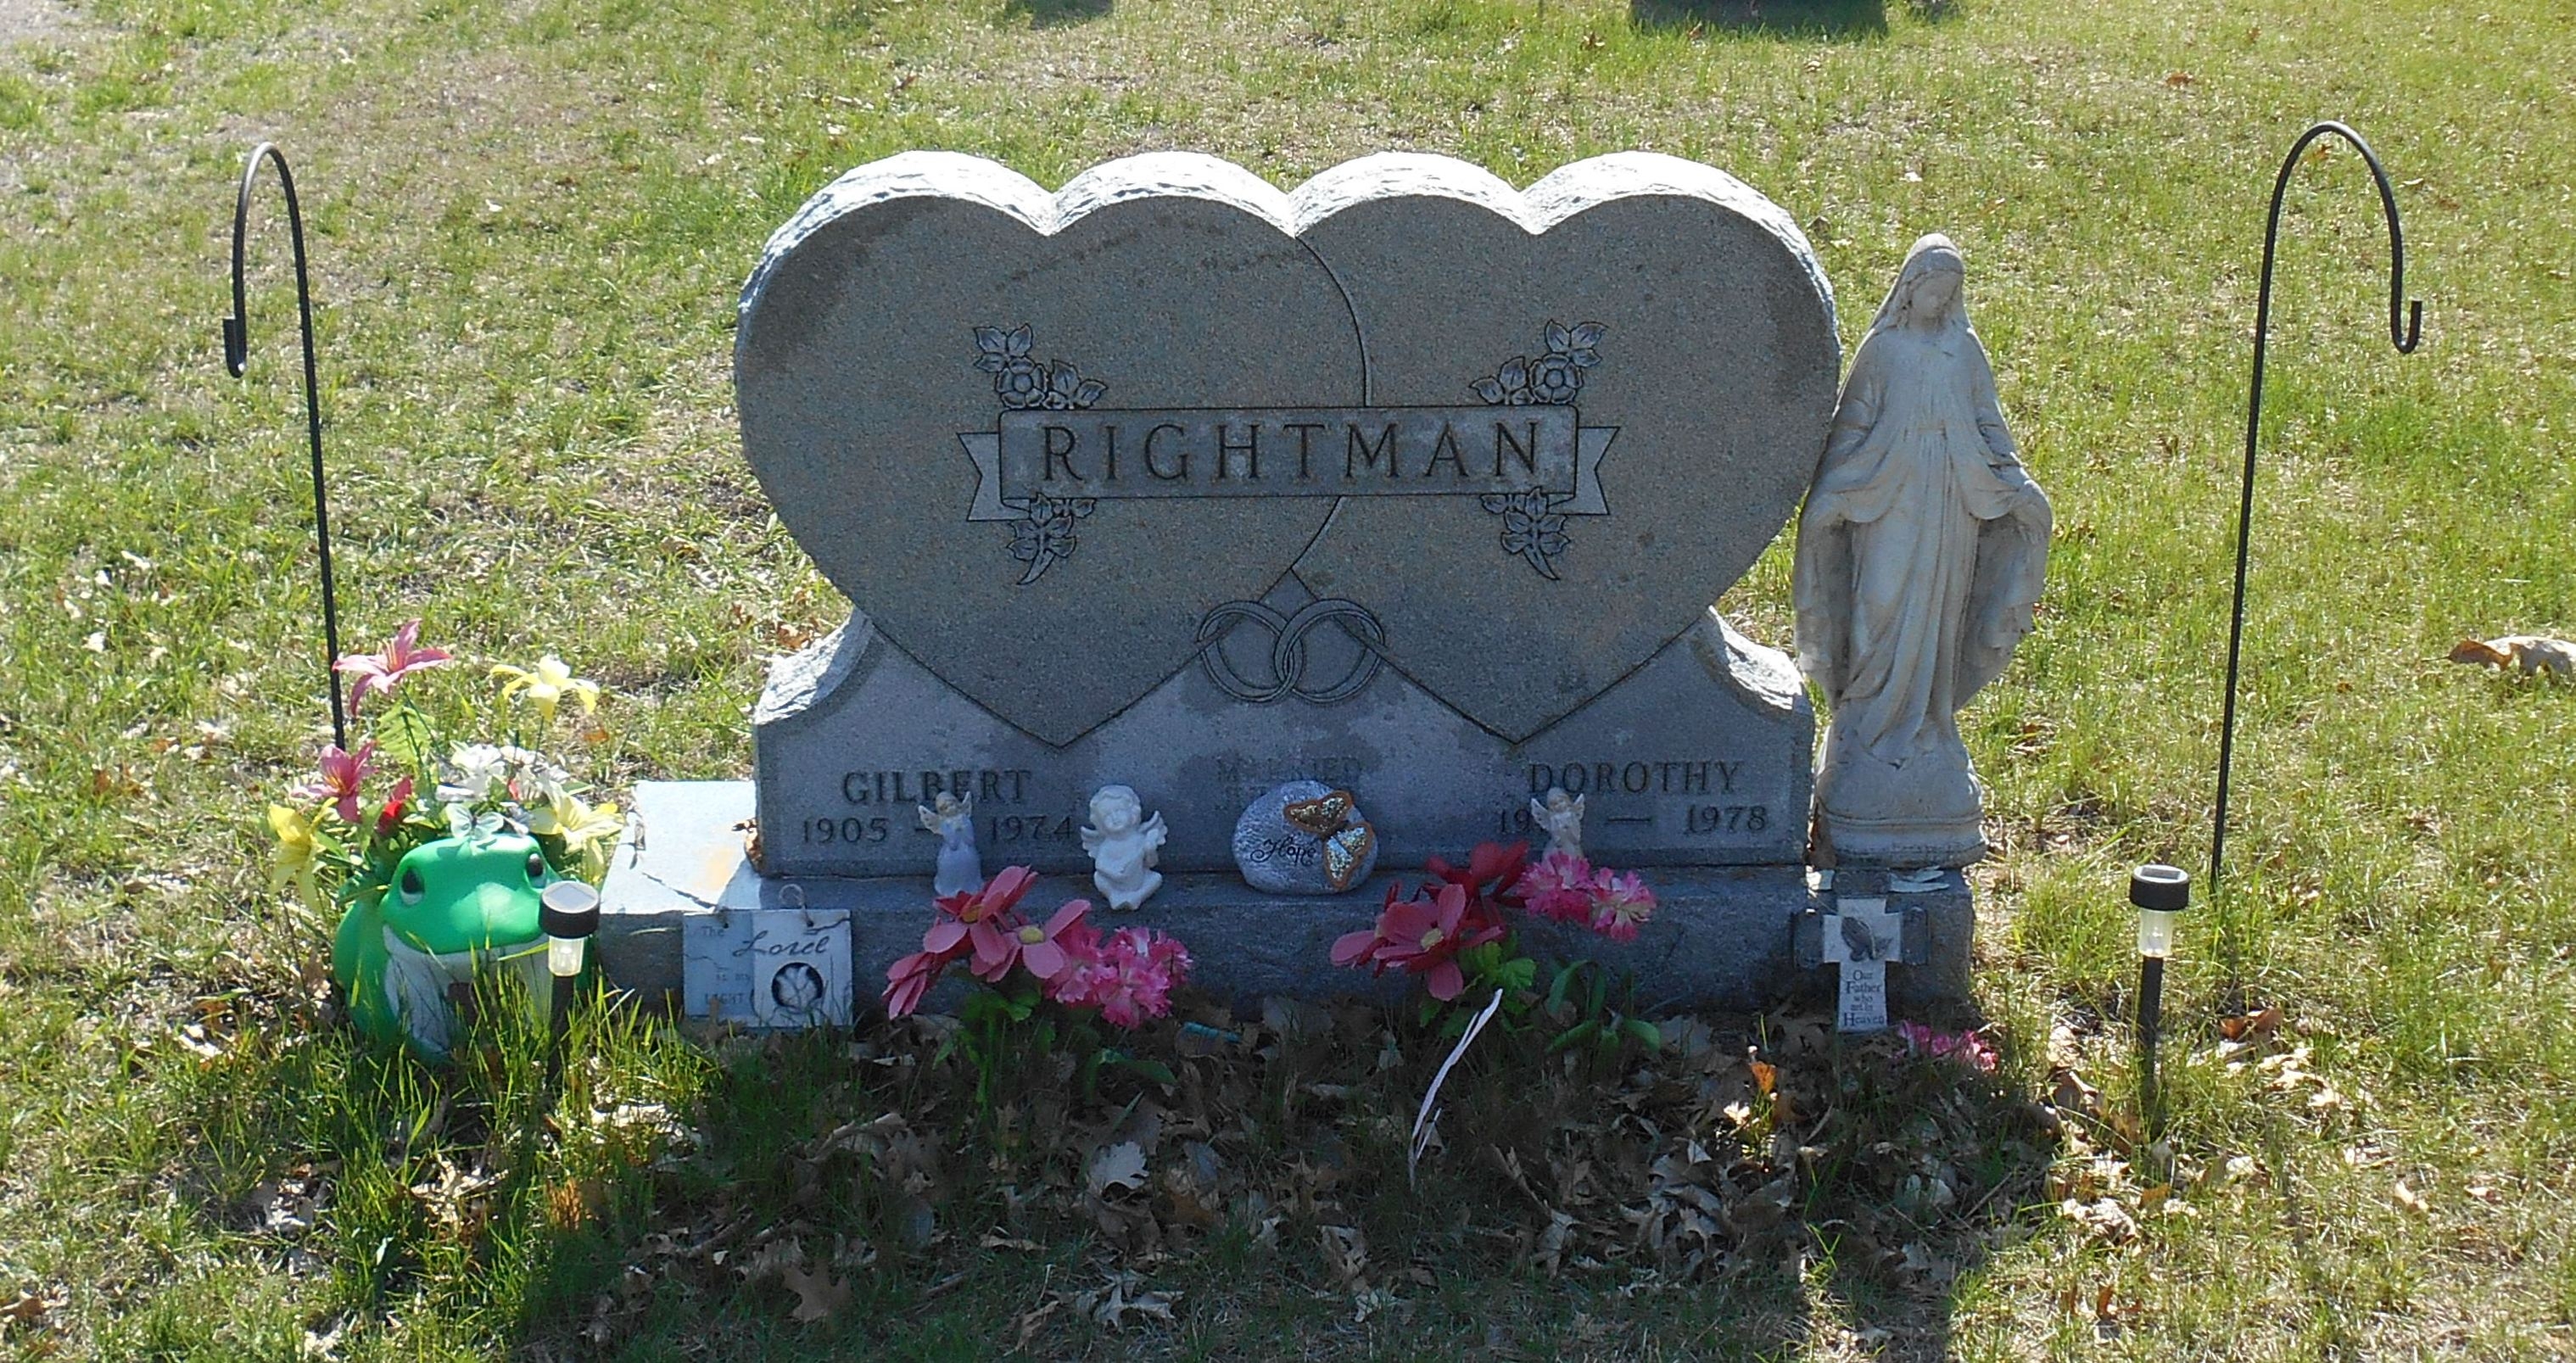 Gilbert & Dorothy Rightman gravesite